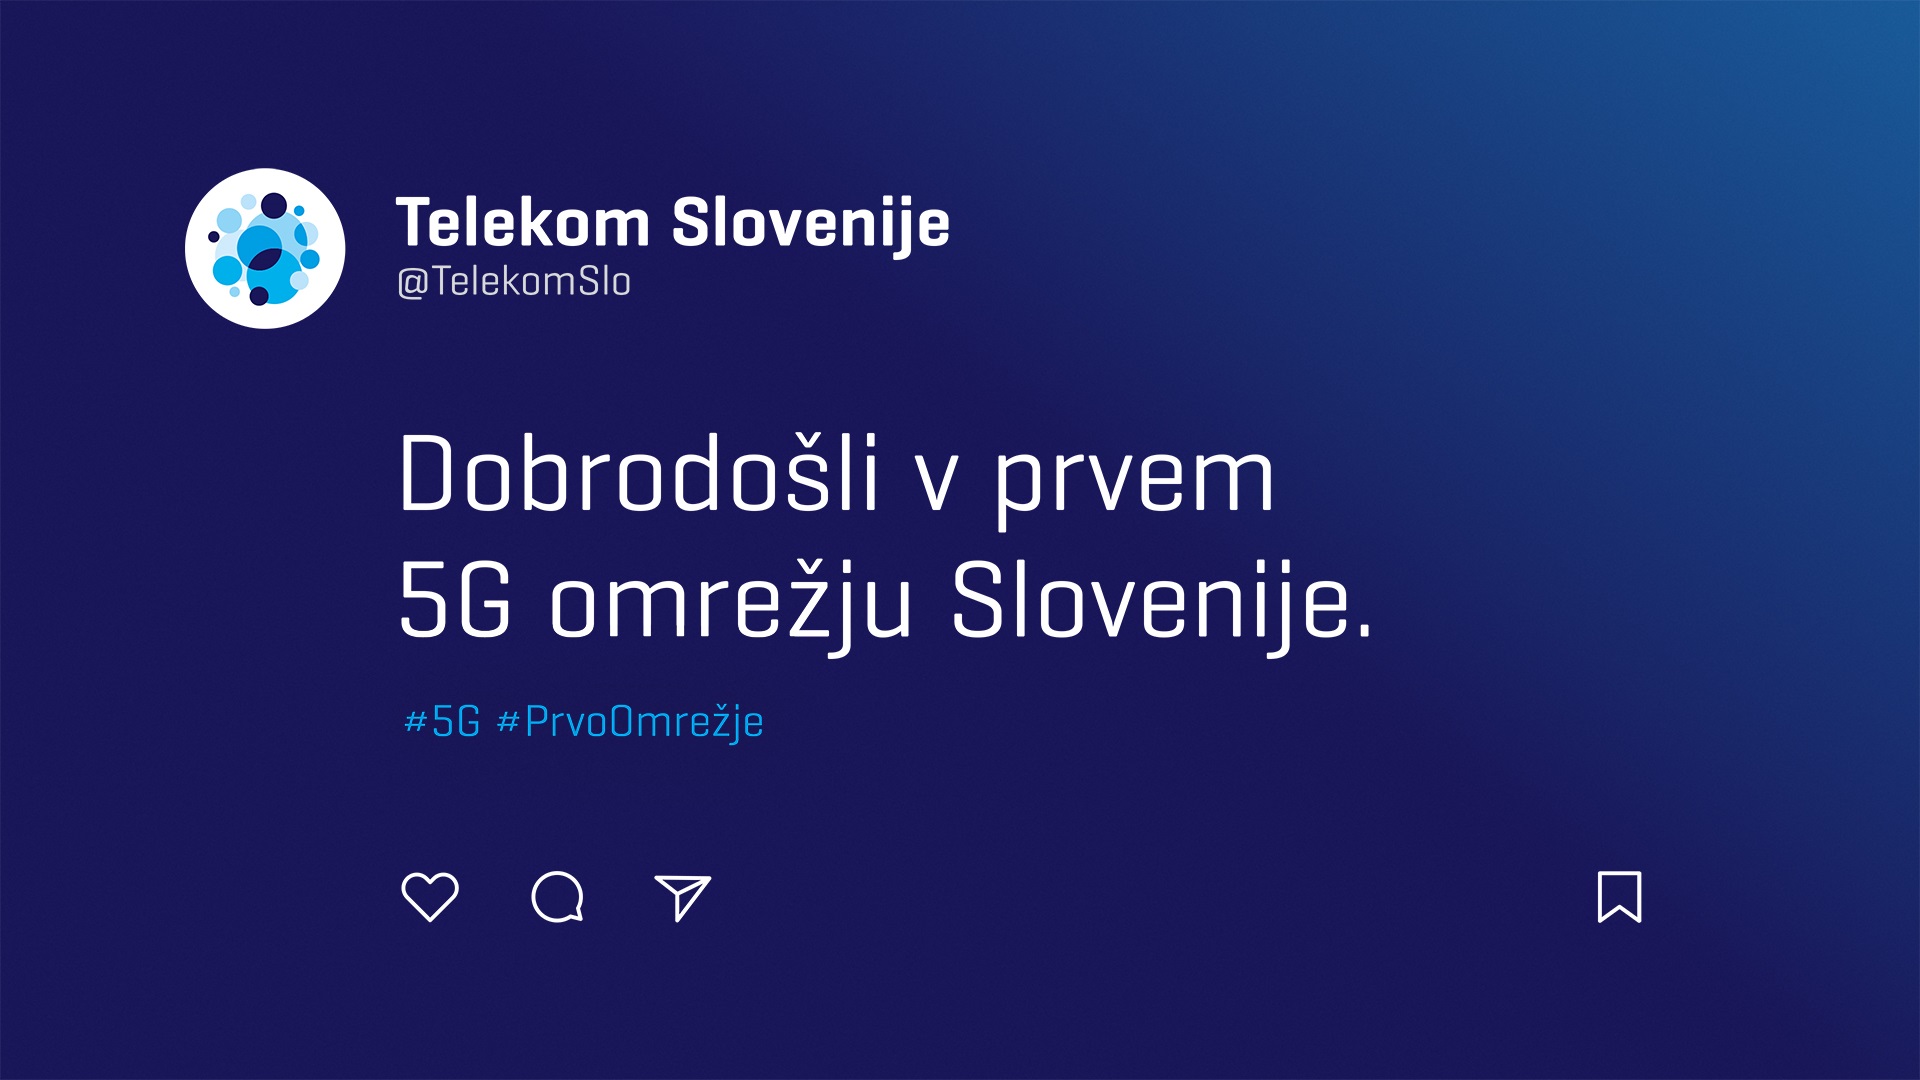 Uporabniki Telekoma Slovenije lahko že uporabljajo prvo 5G omrežje Slovenije